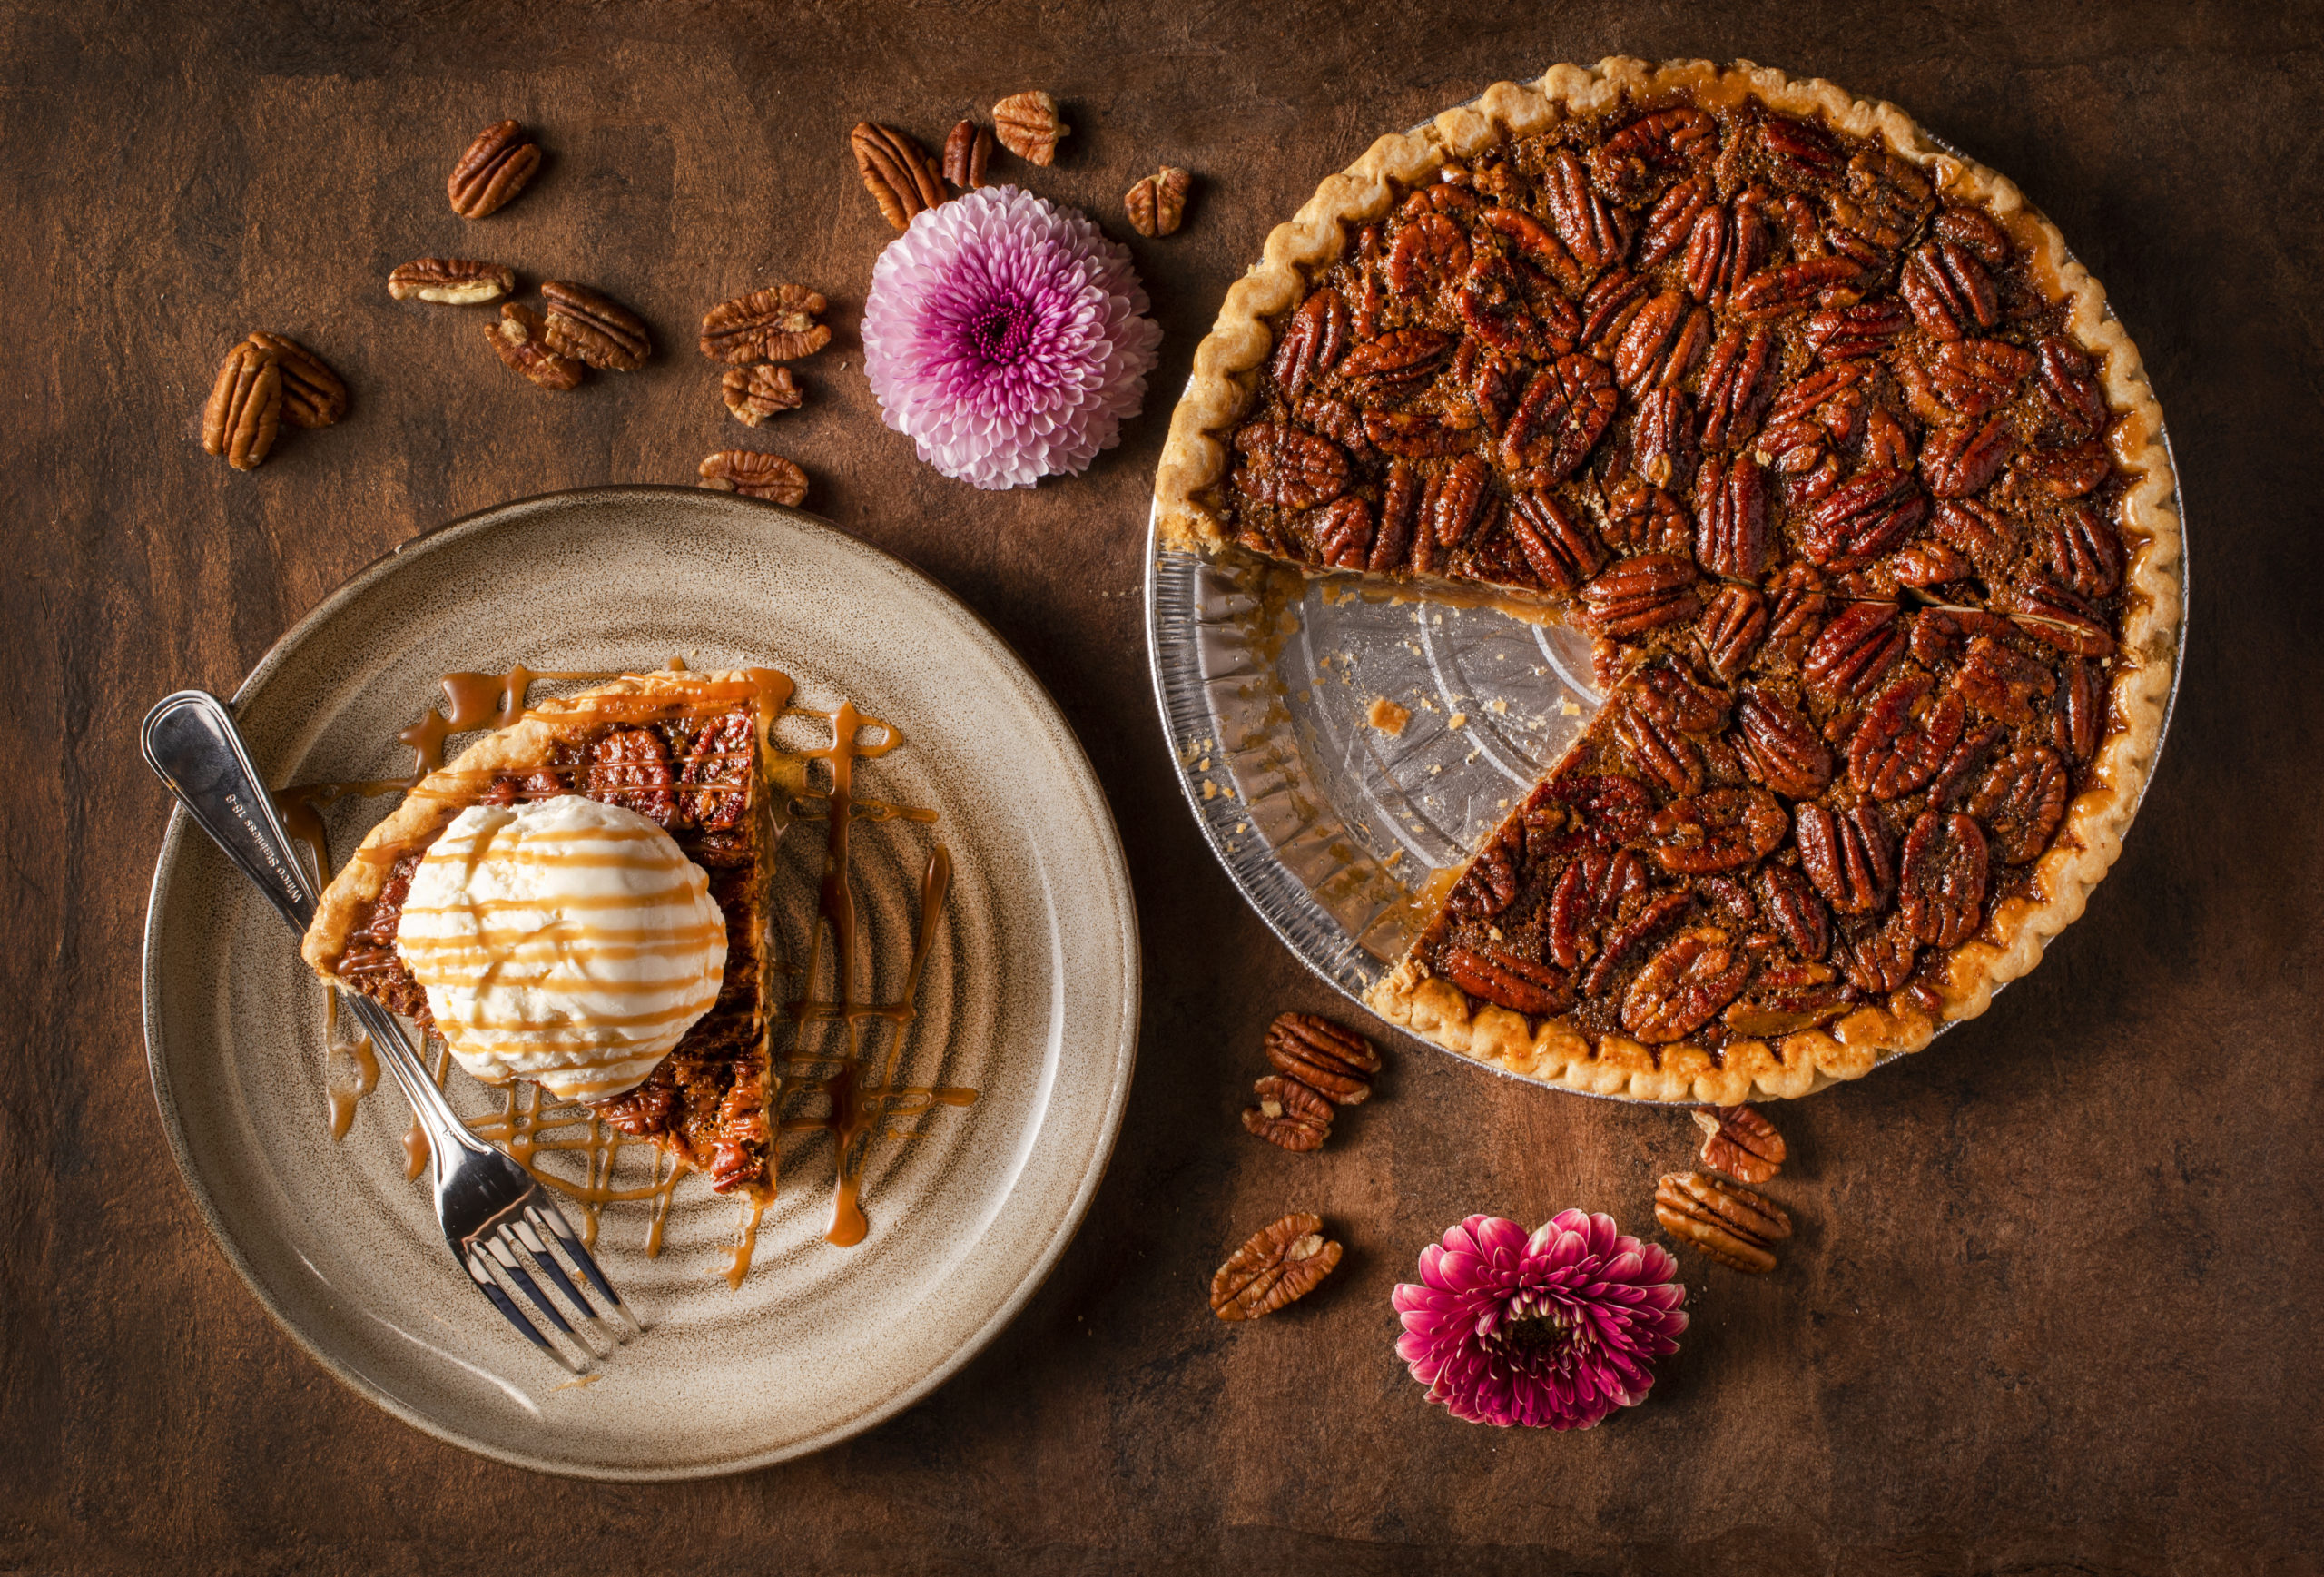 Pecan Pie from Sweet T's in Windsor. (John Burgess/The Press Democrat)